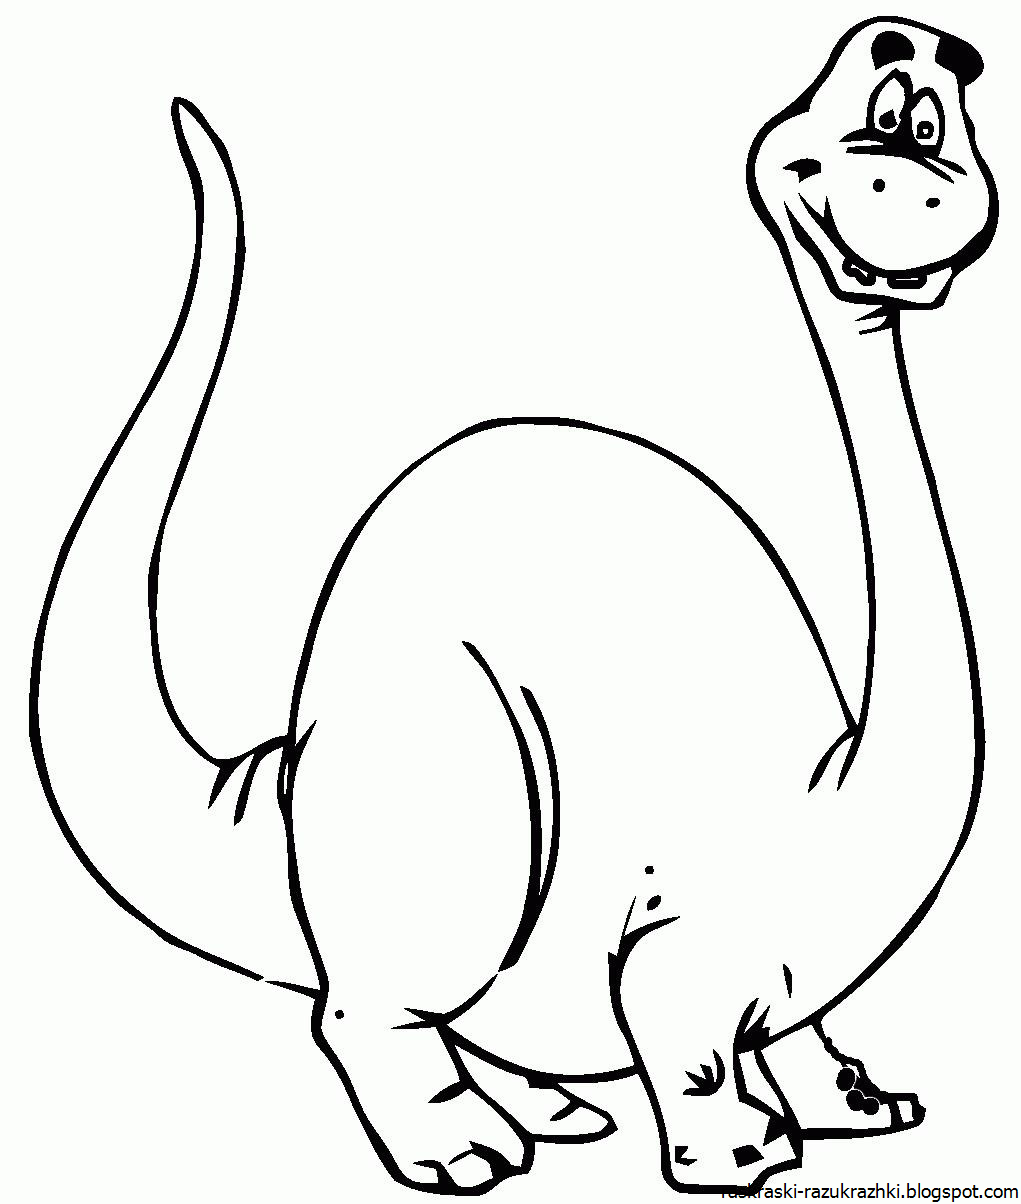 Динозавры раскраска а4. Динозавры / раскраска. Динозавр раскраска для детей. Раскраска "Динозаврики". Динозавры картинки раскраски.